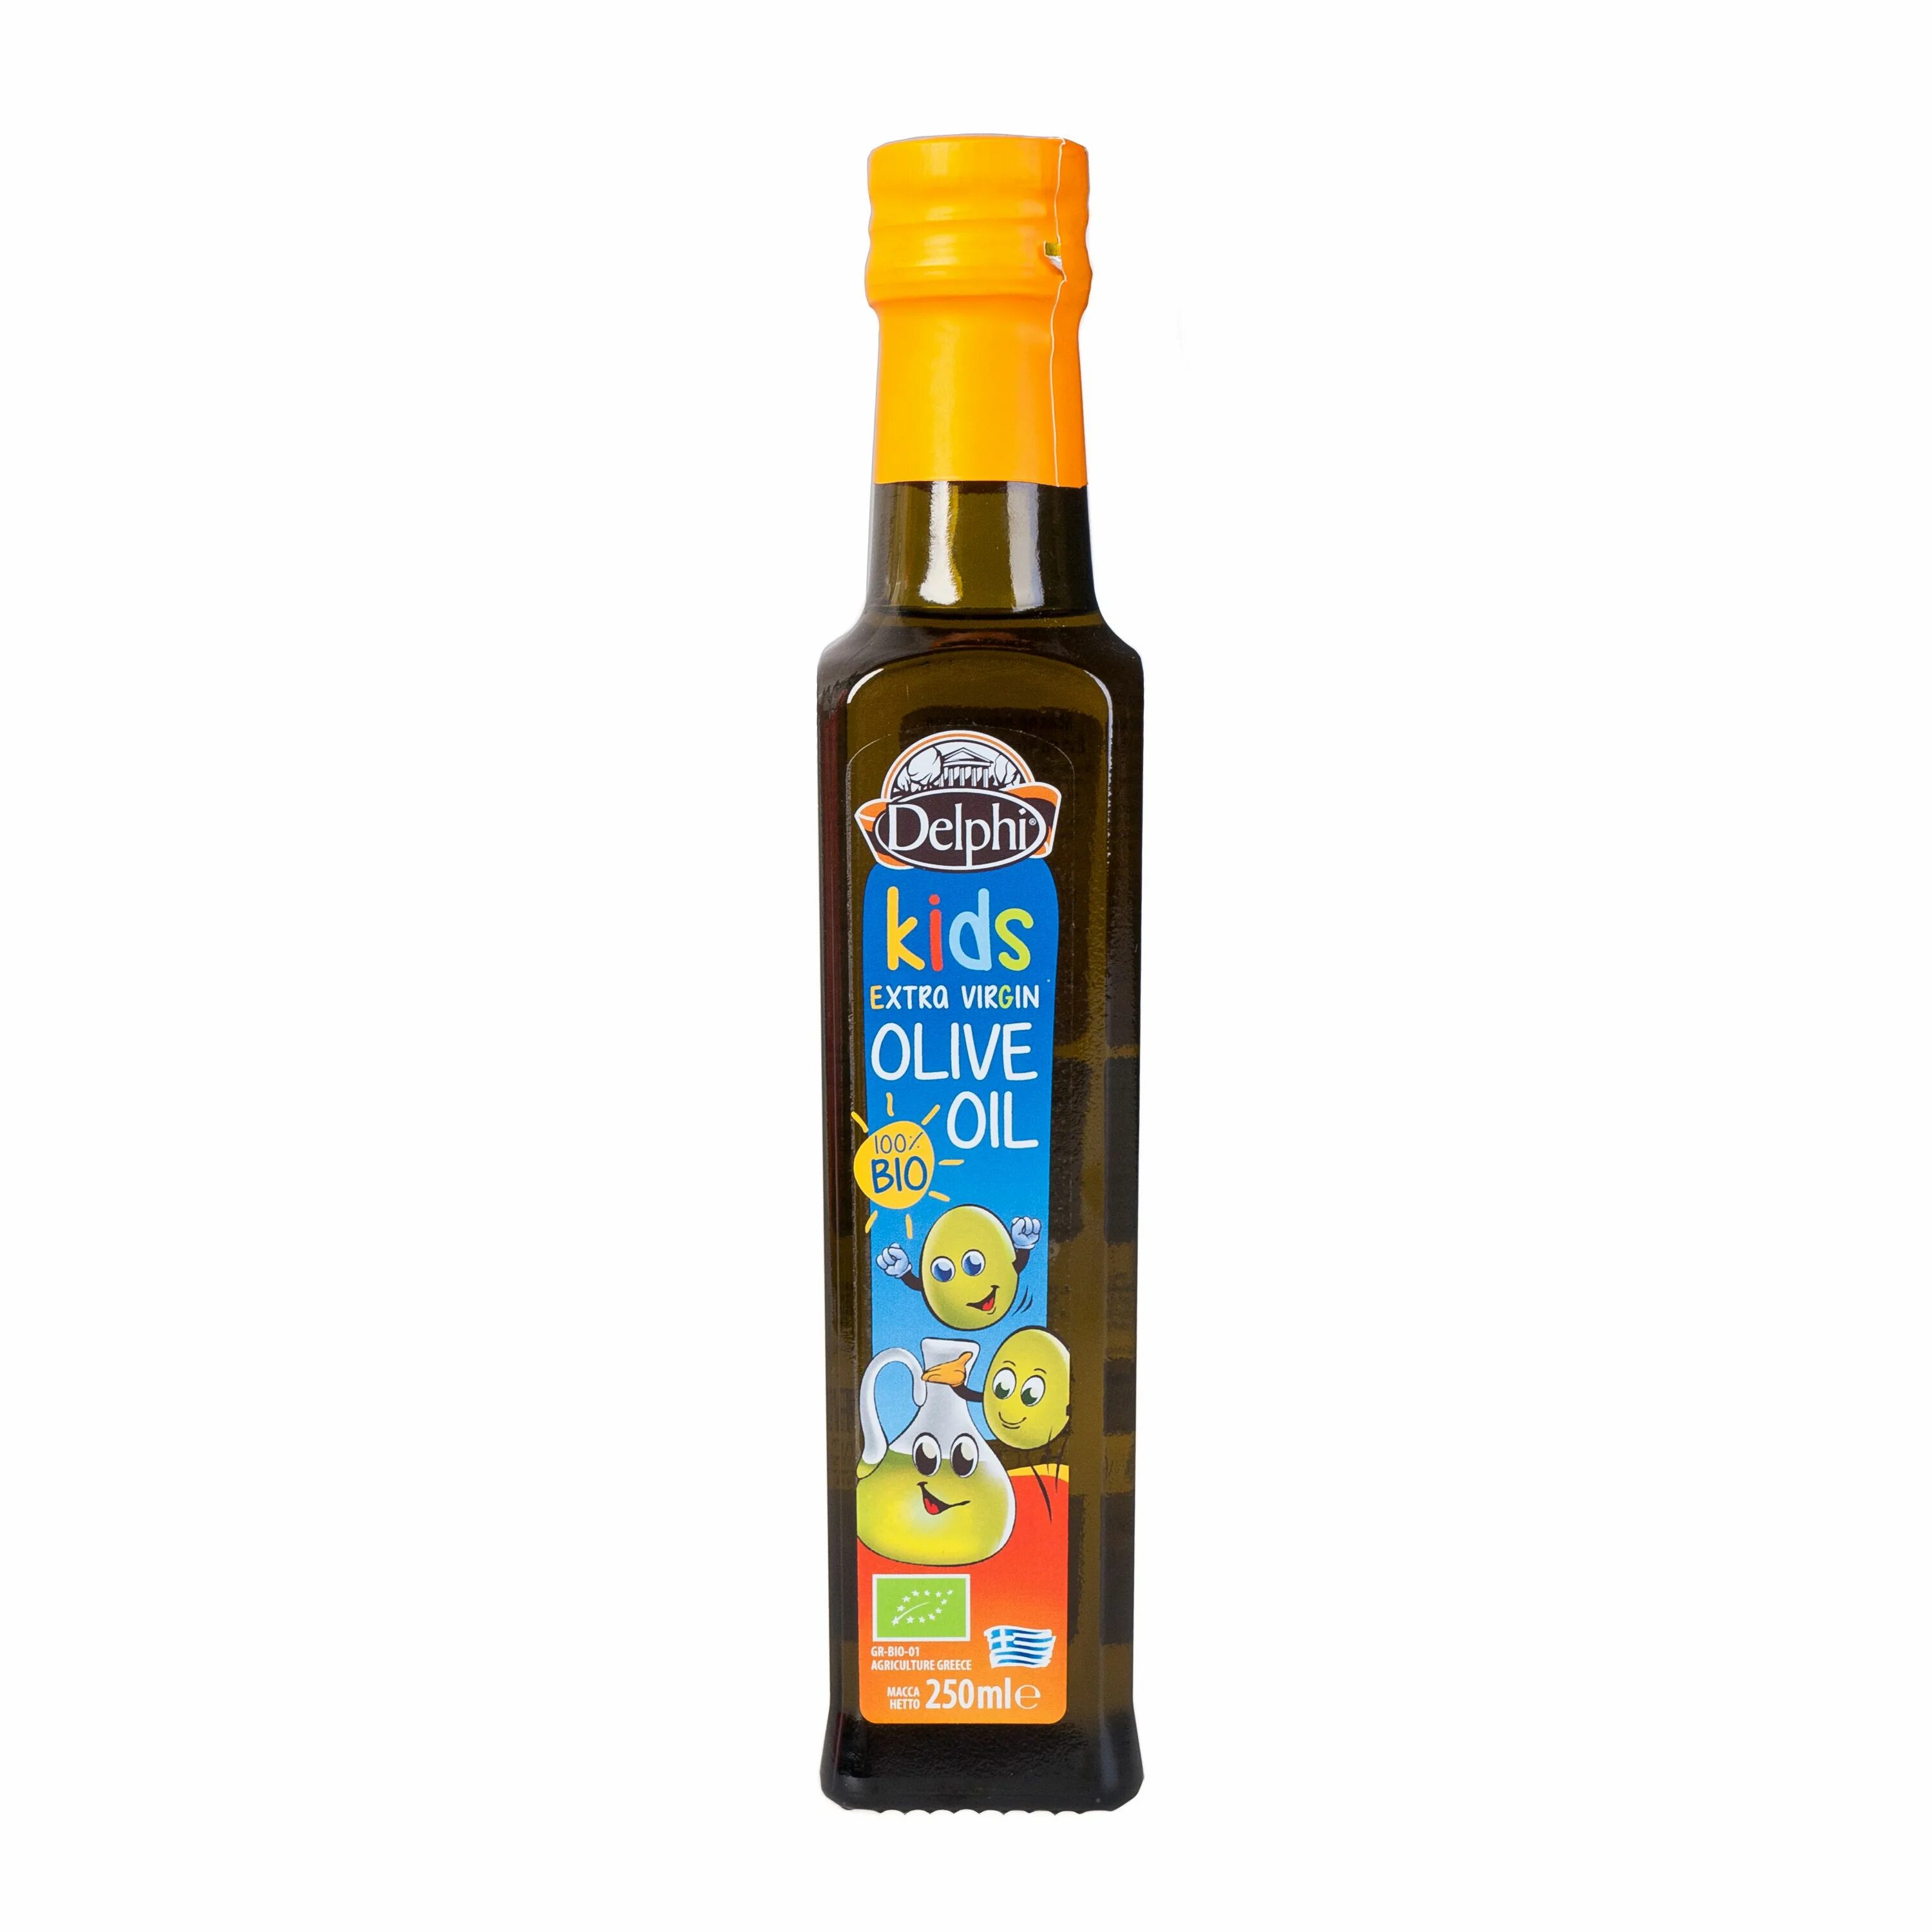 Масло оливковое e.v. био Kids DELPHI 0,25 Л. Масло оливковое Extra Virgin Olive Oil DELPHI 0,25л. Масло оливковое DELPHI С Крита ст/б 250мл. DELPHI масло оливковое Extra Virgin нерафинированное. Детям можно оливковое масло